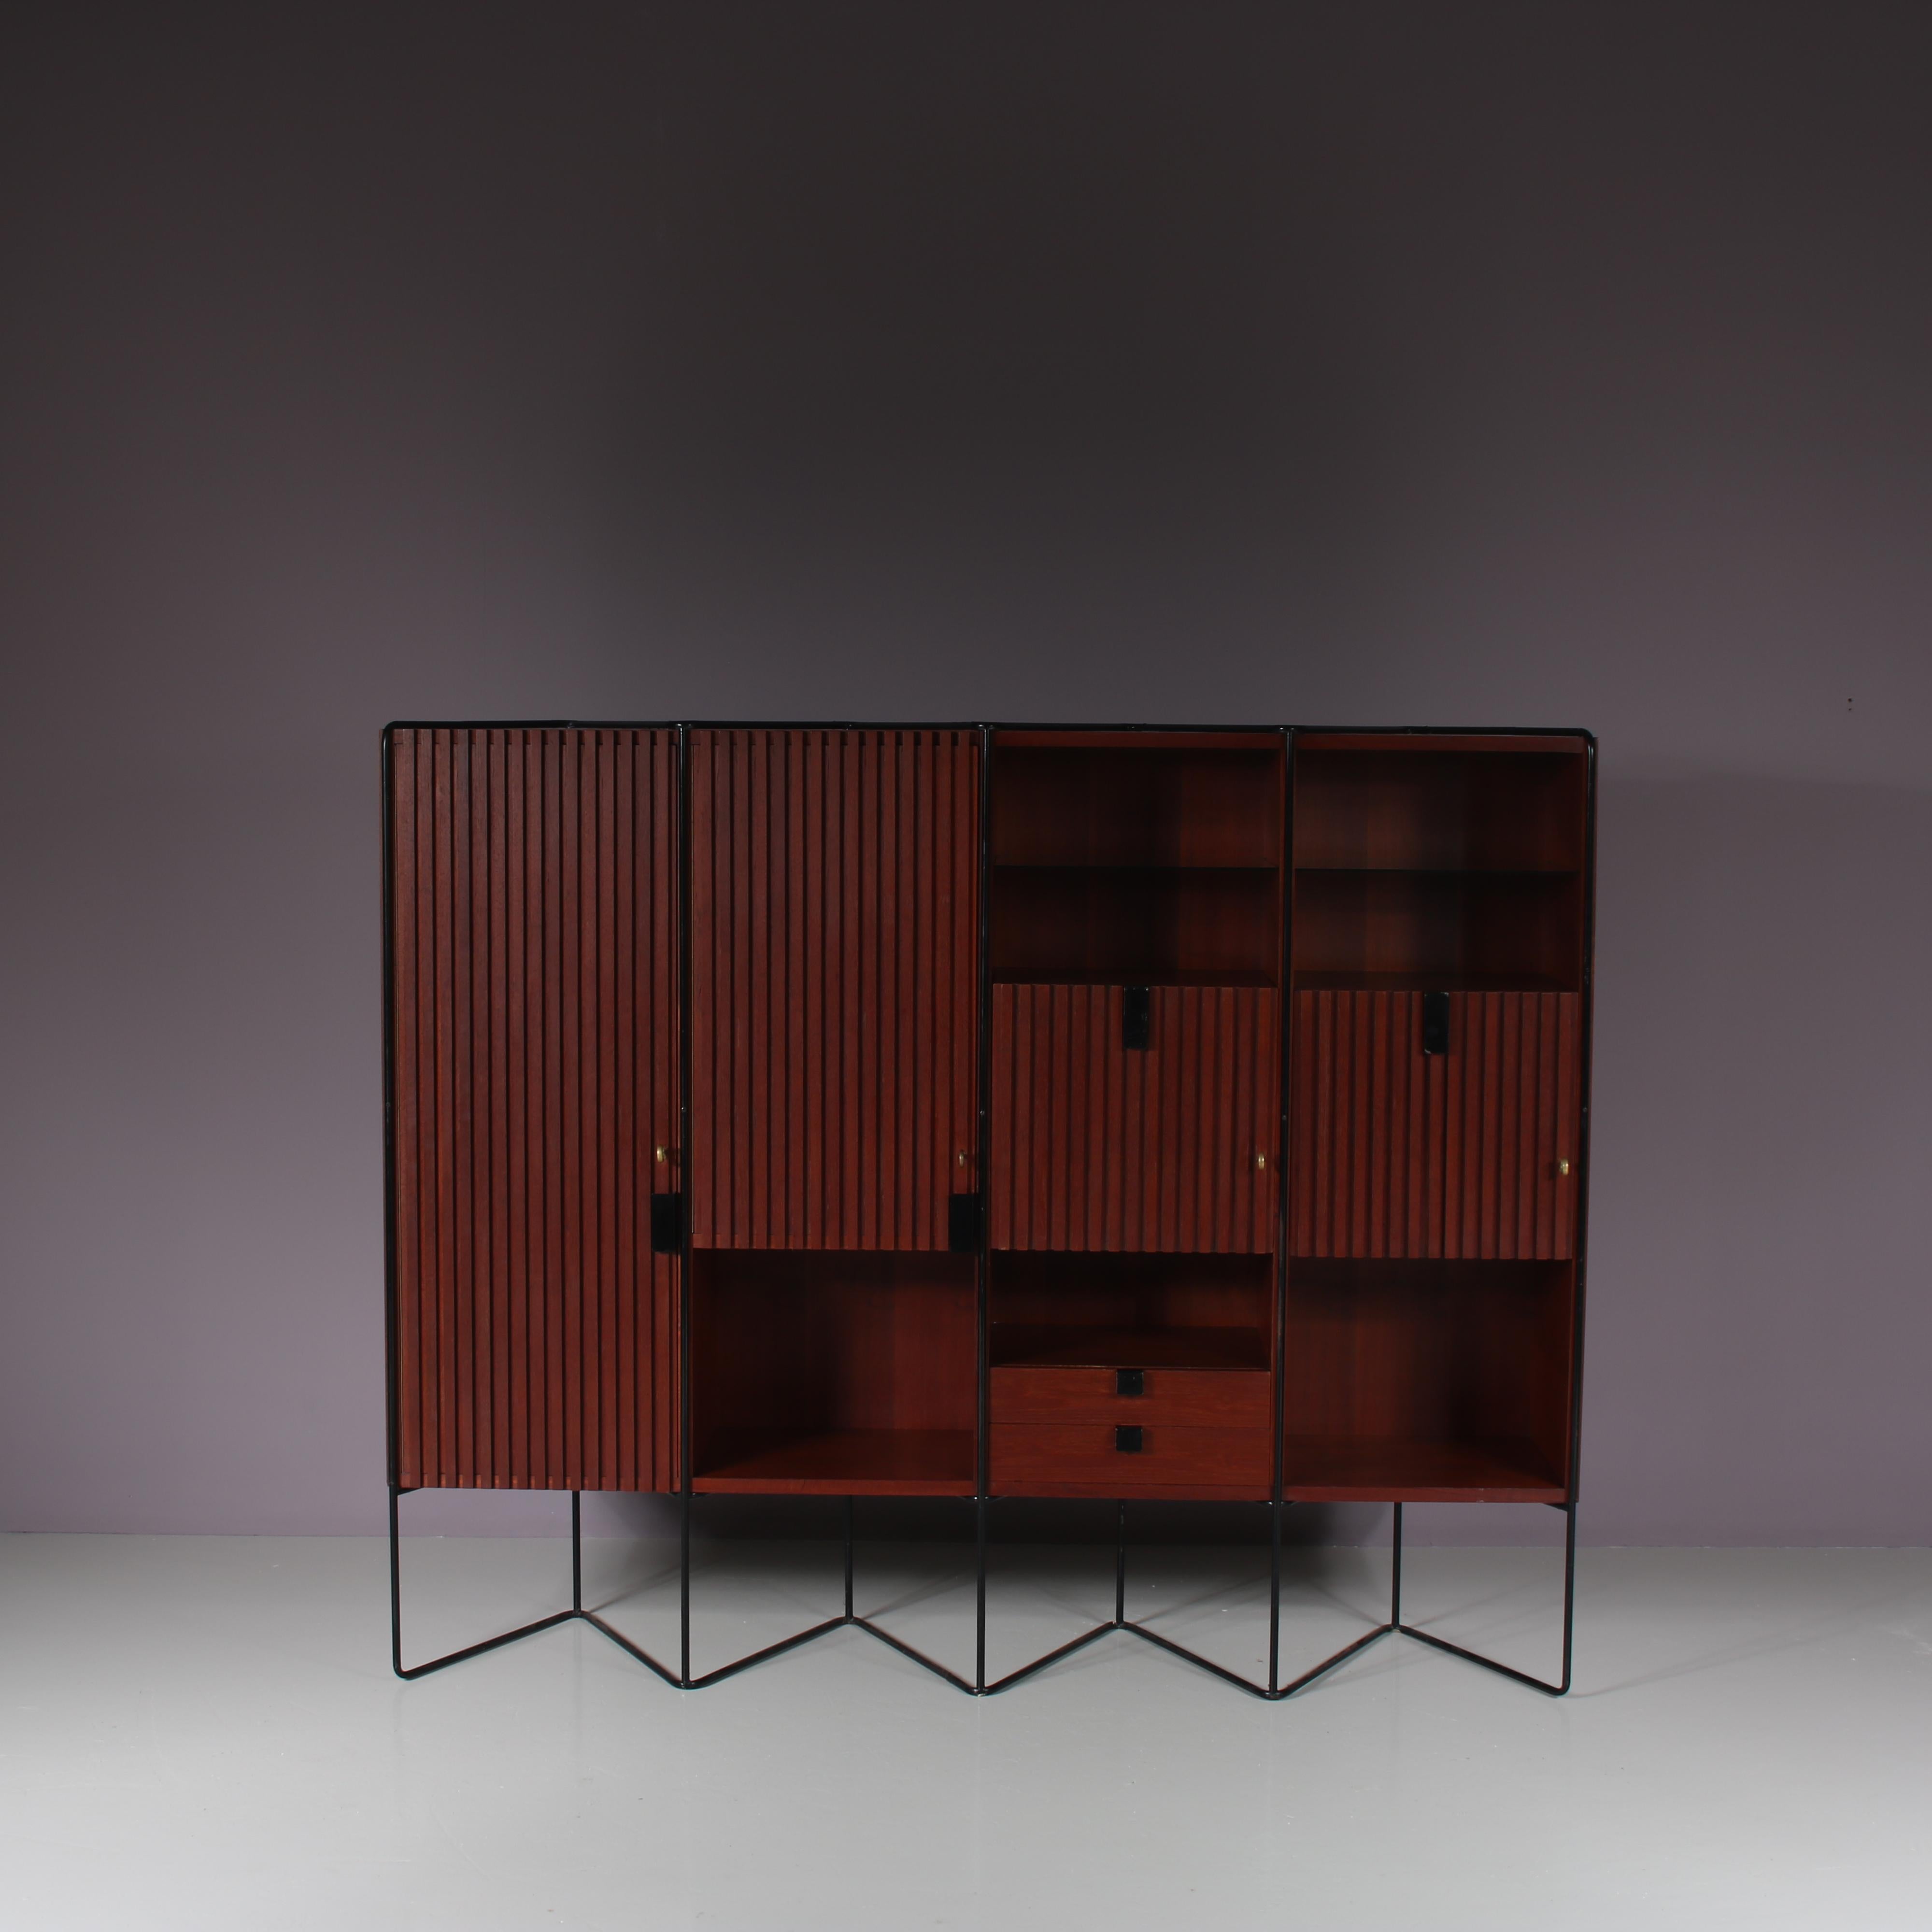 Ce meuble exceptionnel est une création de Taichiro Nakai, fabriquée par La Permanente Mobili en Italie vers 1960.

Fabriqué en bois de teck de haute qualité dans une couleur brune chaude, sur une fine base tubulaire en métal noir. La finition des